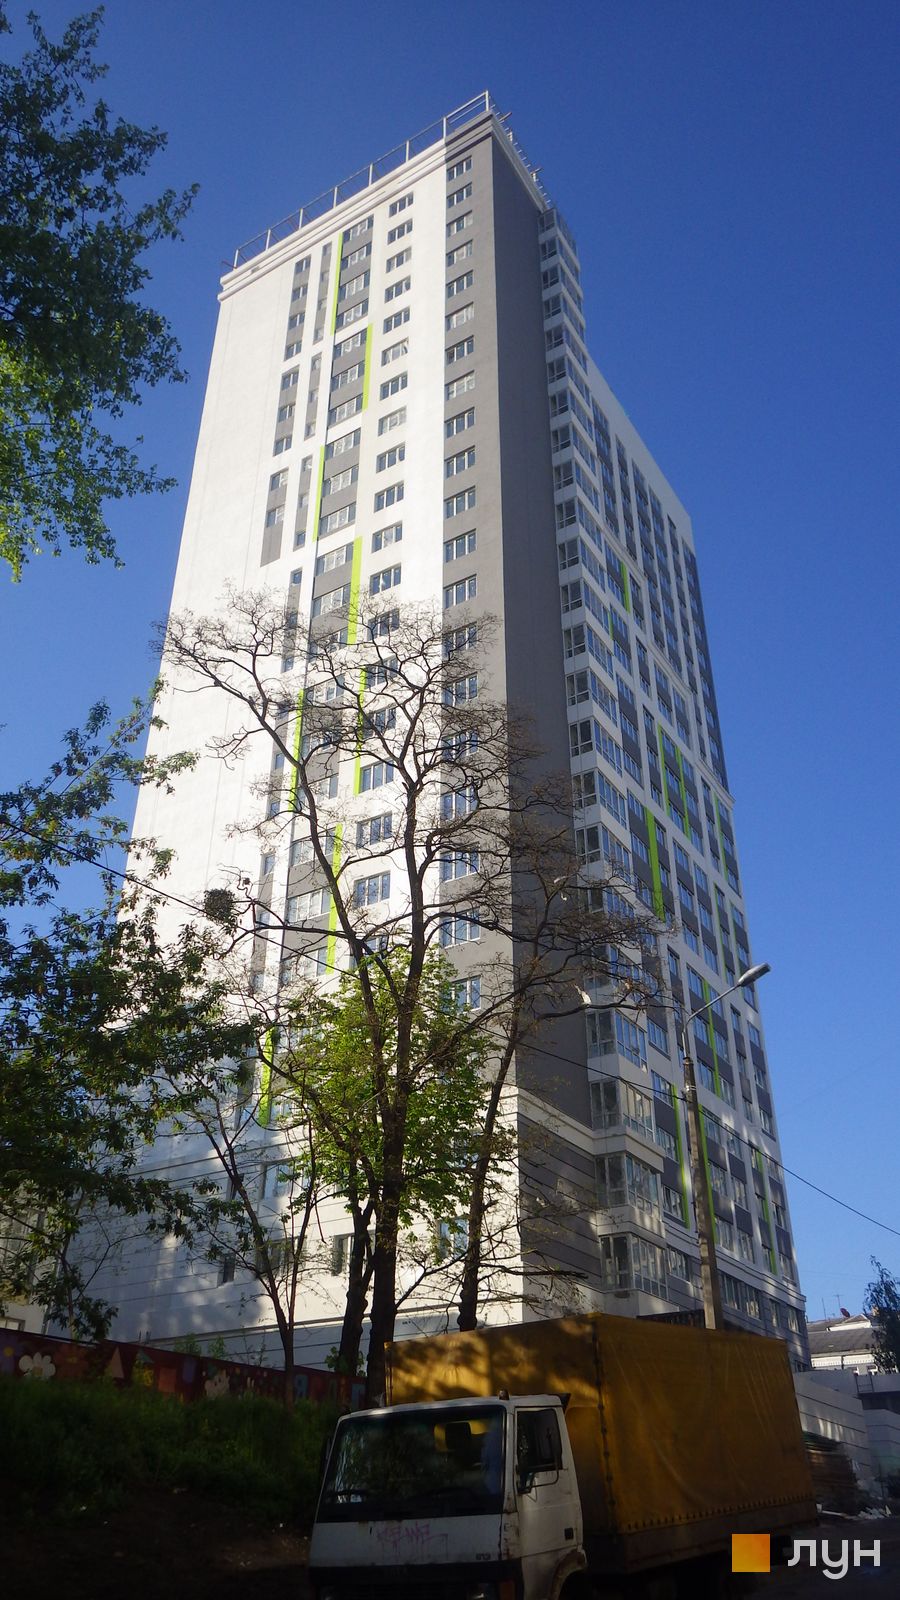 Моніторинг будівництва ЖК Лук'янівський - Ракурс 4, травень 2015